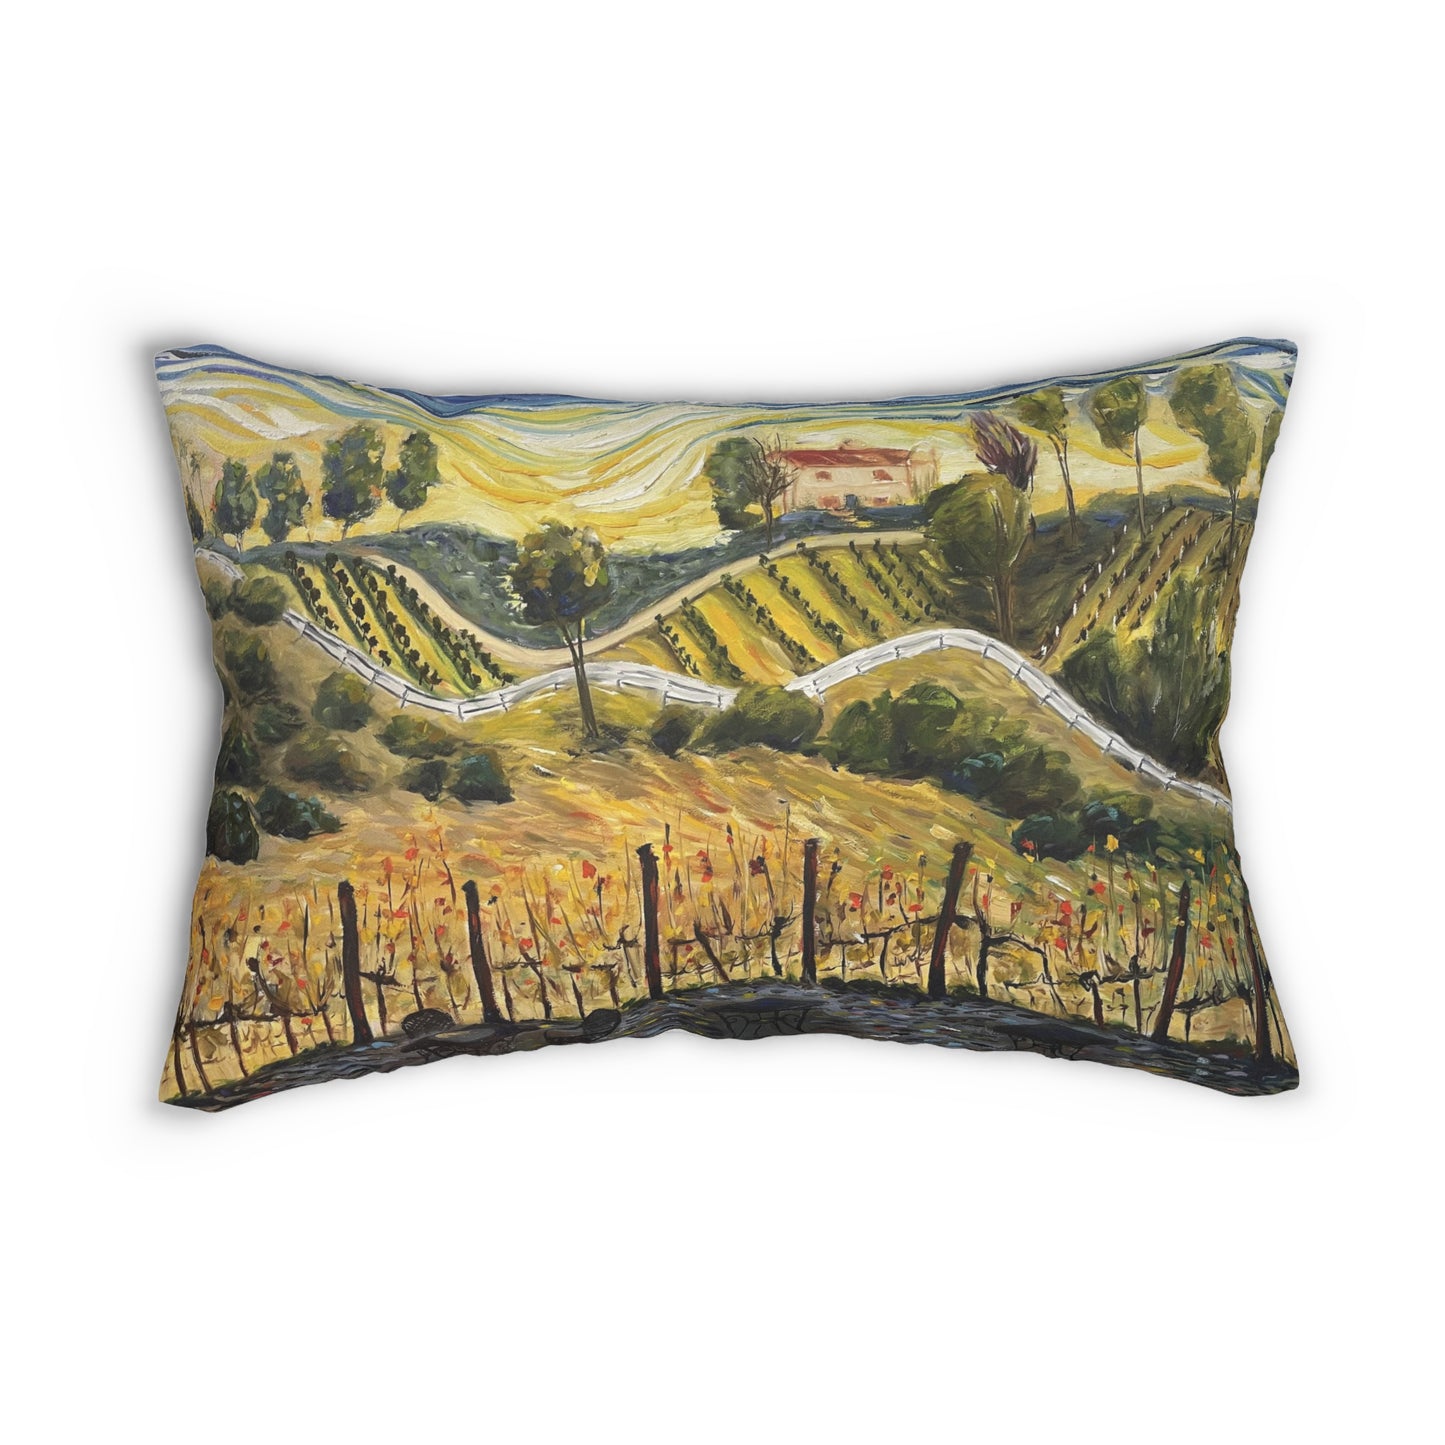 Temecula Lumbar Pillow featuring "Sunset at the Villa" (GBV) painting and "Temecula"